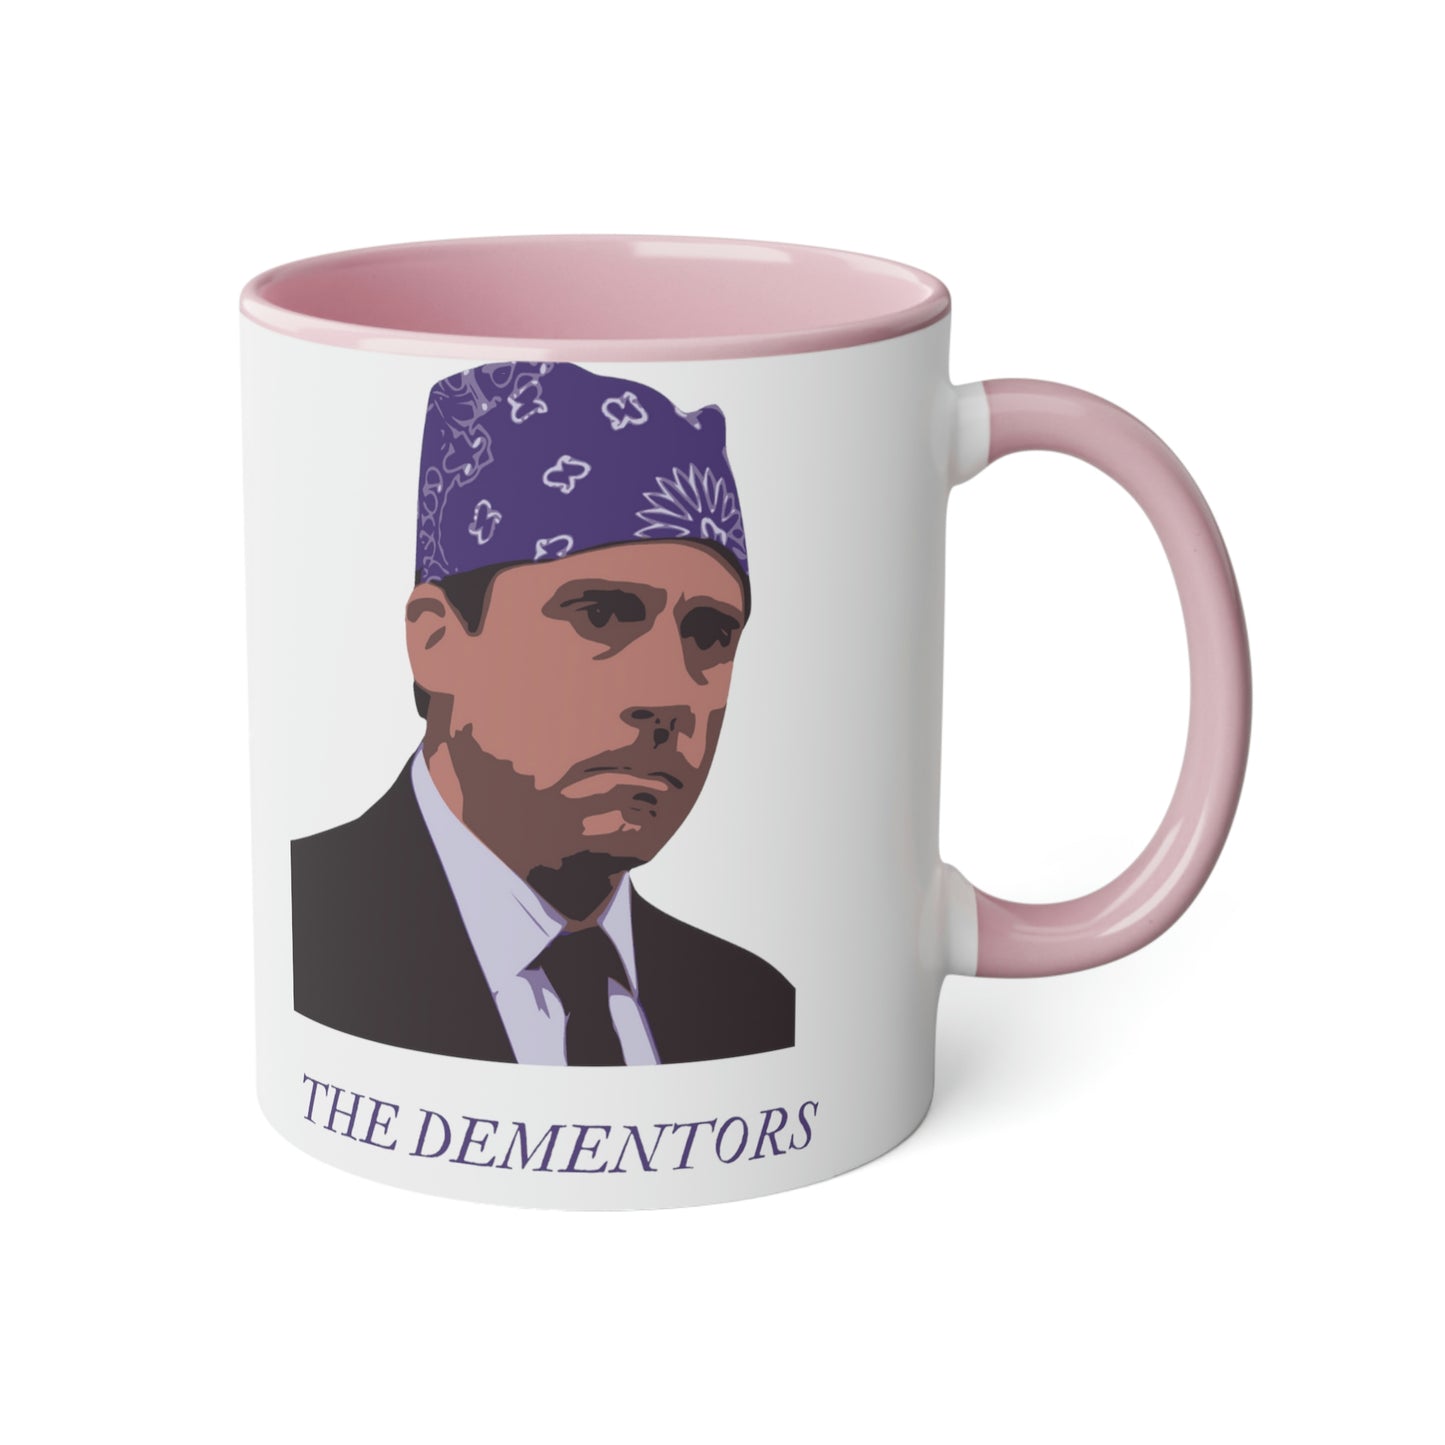 Meme Mug Dunder Mifflin workplace comedy - Dementors